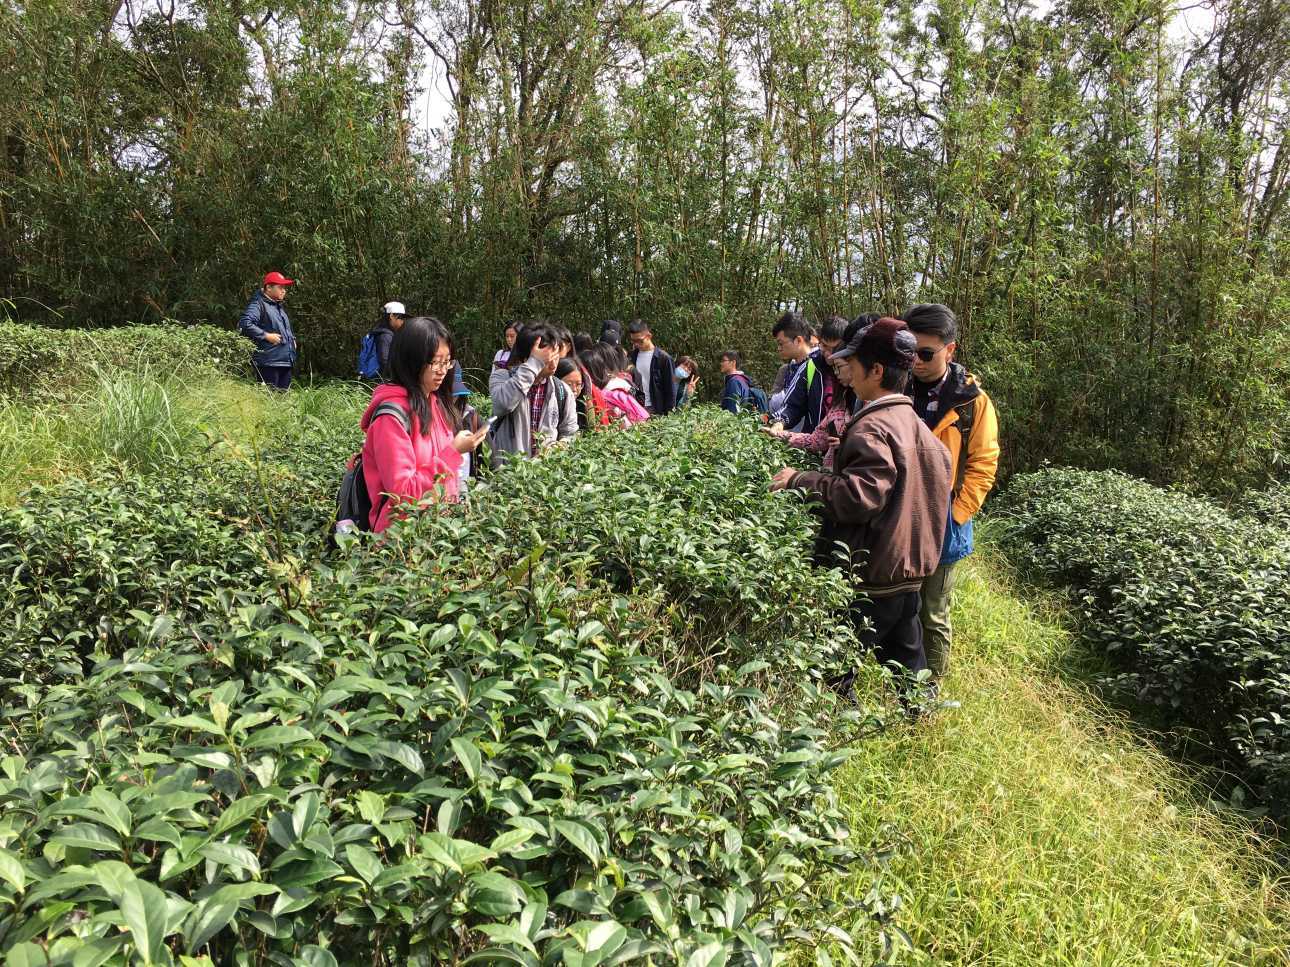 坪林自然農法茶園除了生產茶葉外也提供生物多樣性棲地及環境教育場域